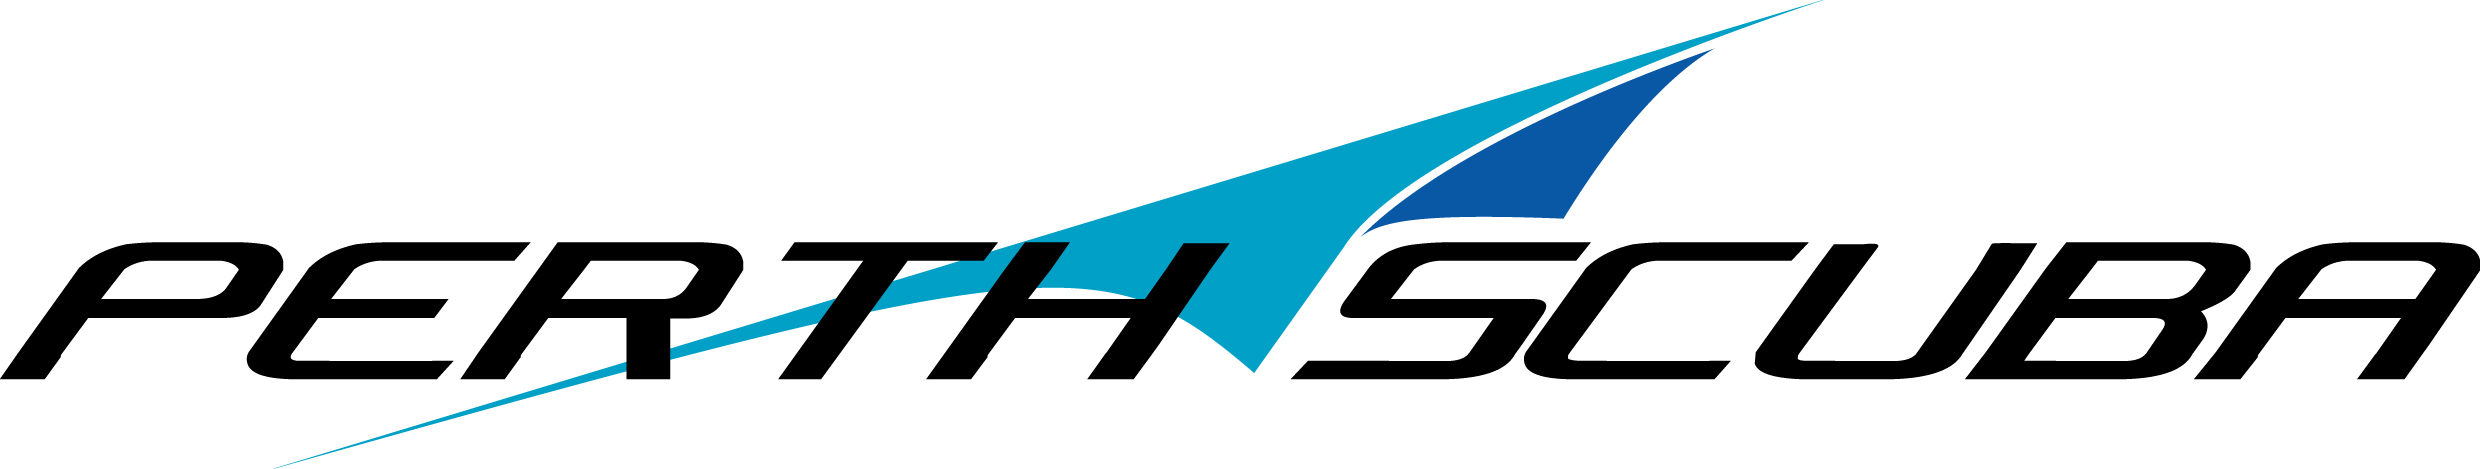 Perth Scuba - Logo